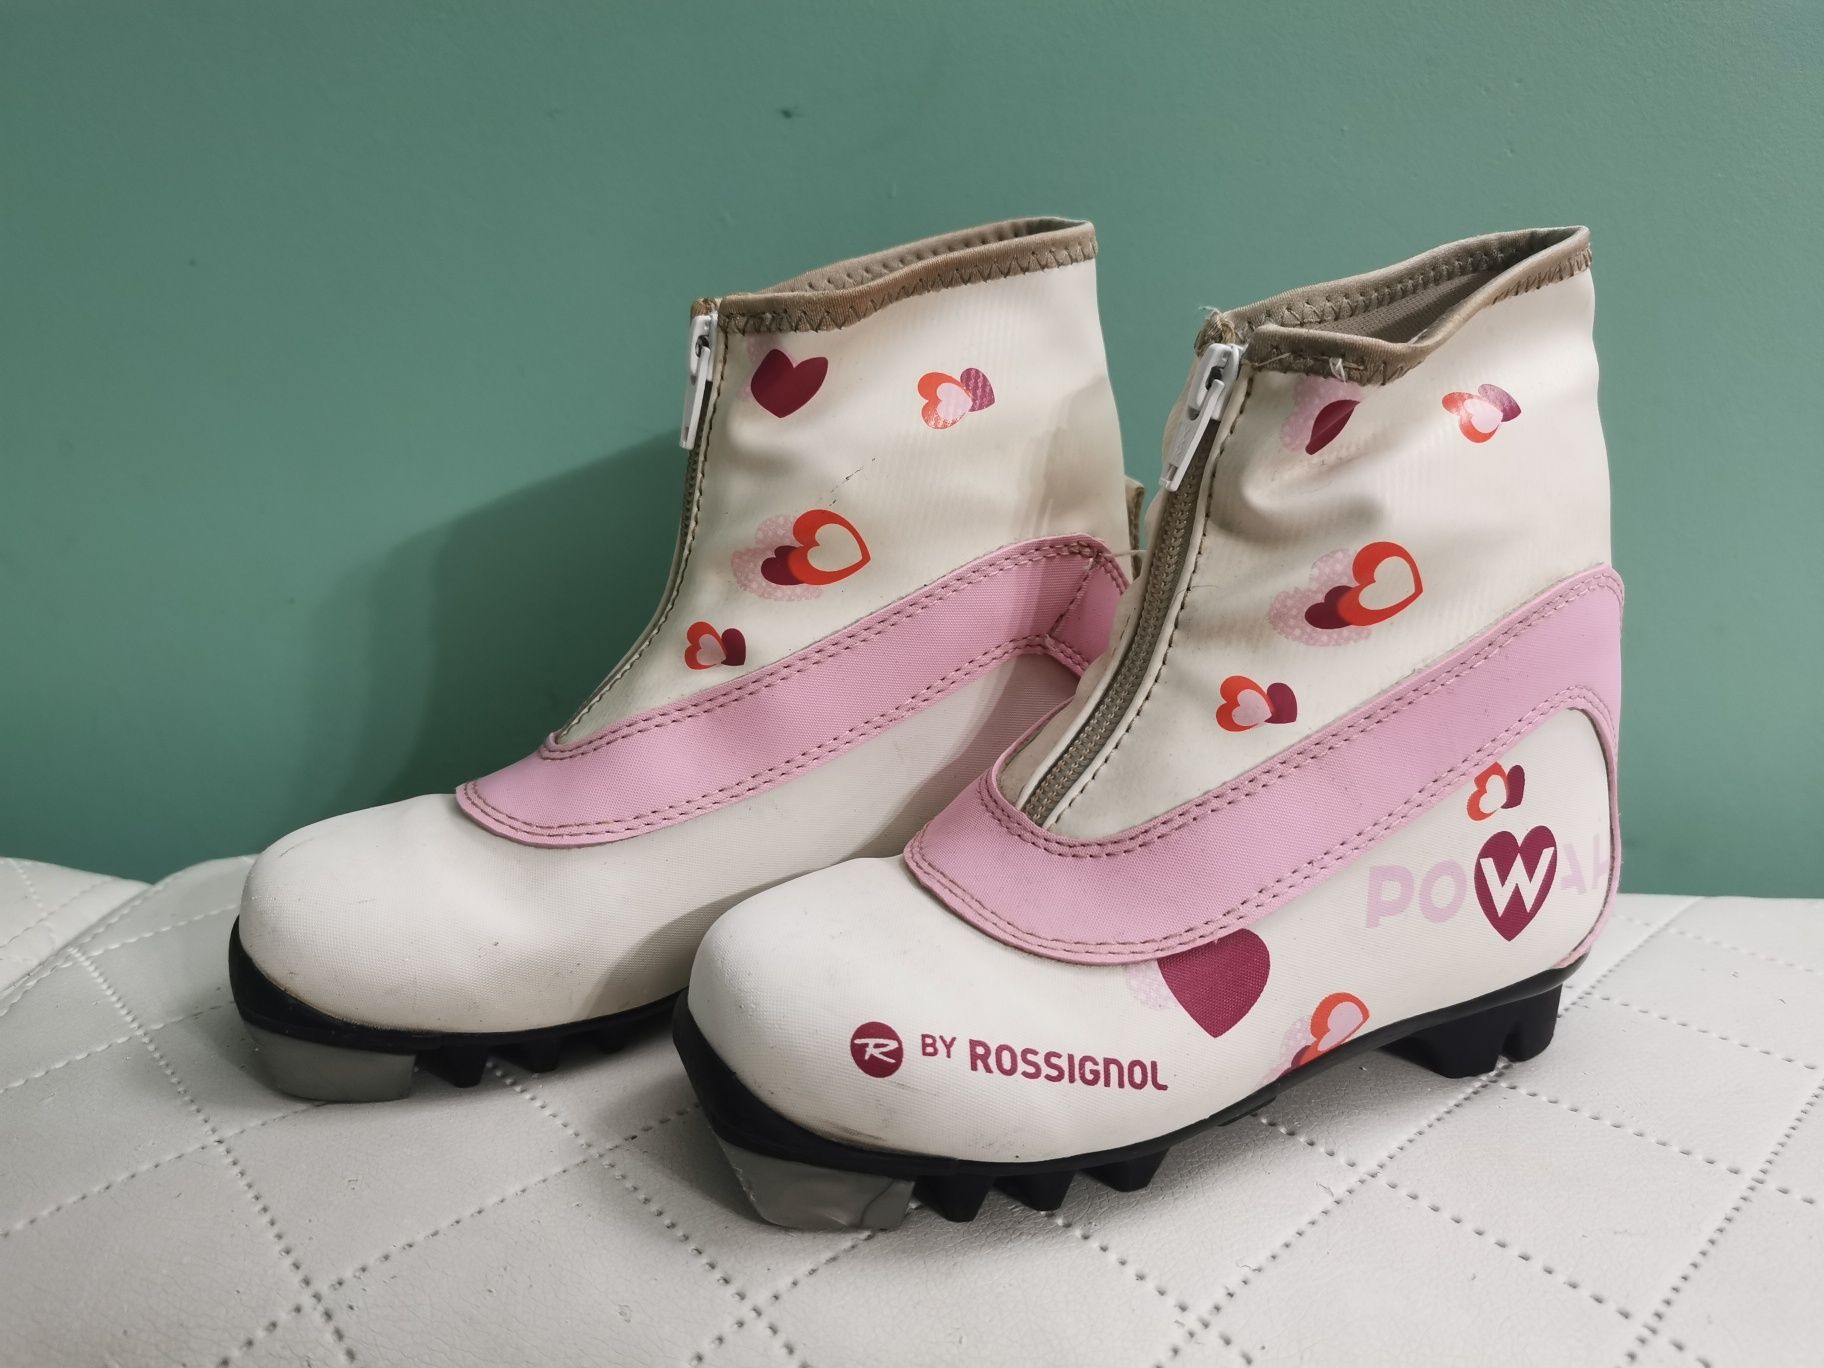 Buty do nart biegowych Rossignol roz. 31 NNN biało różowe